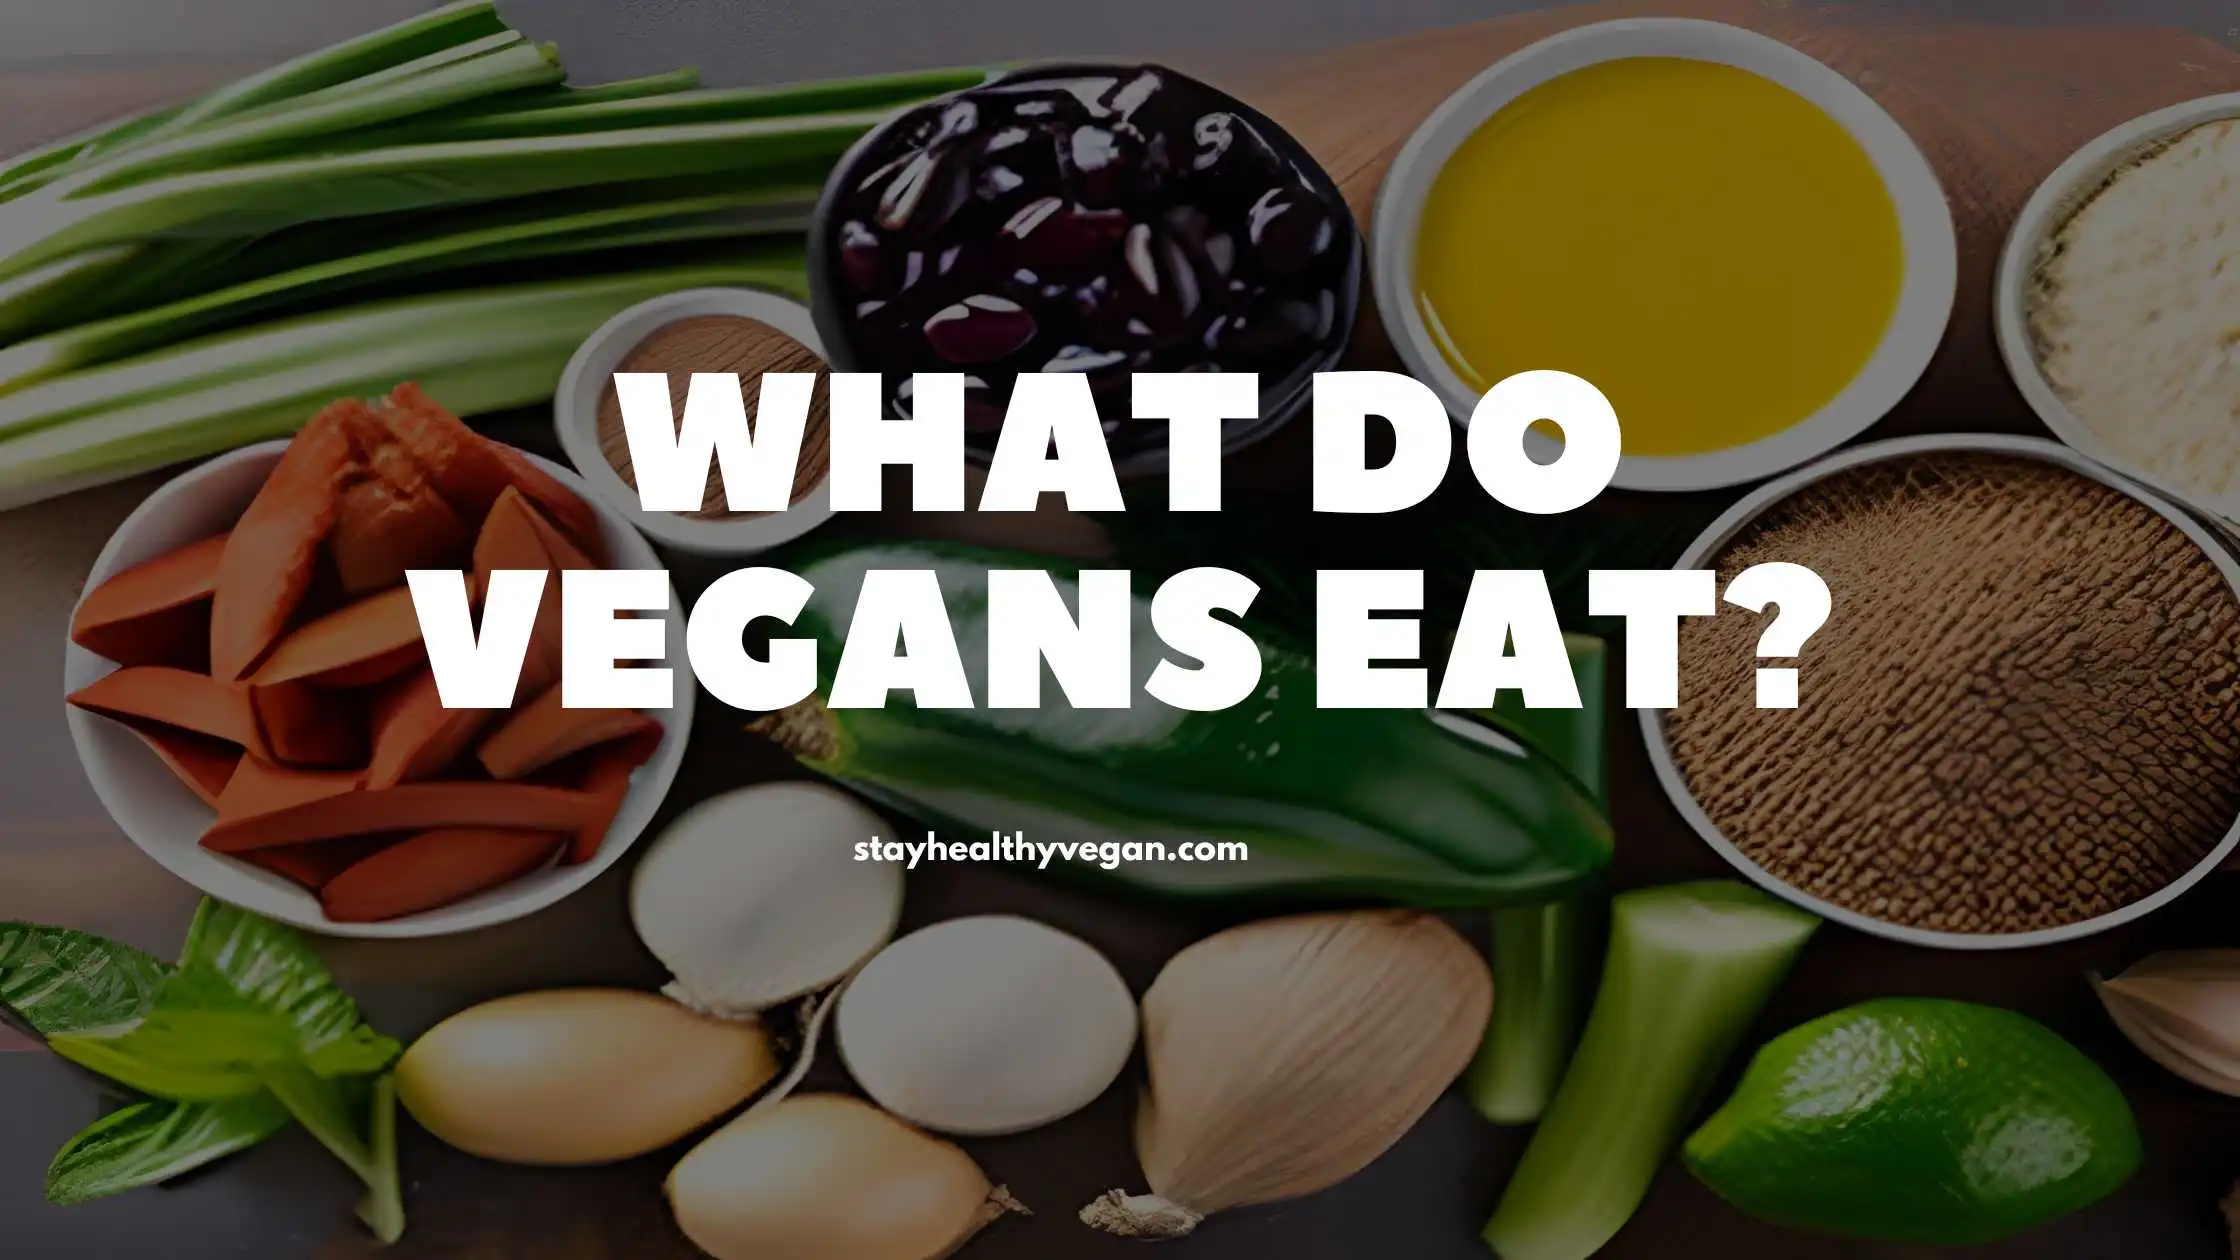 What do vegans eat